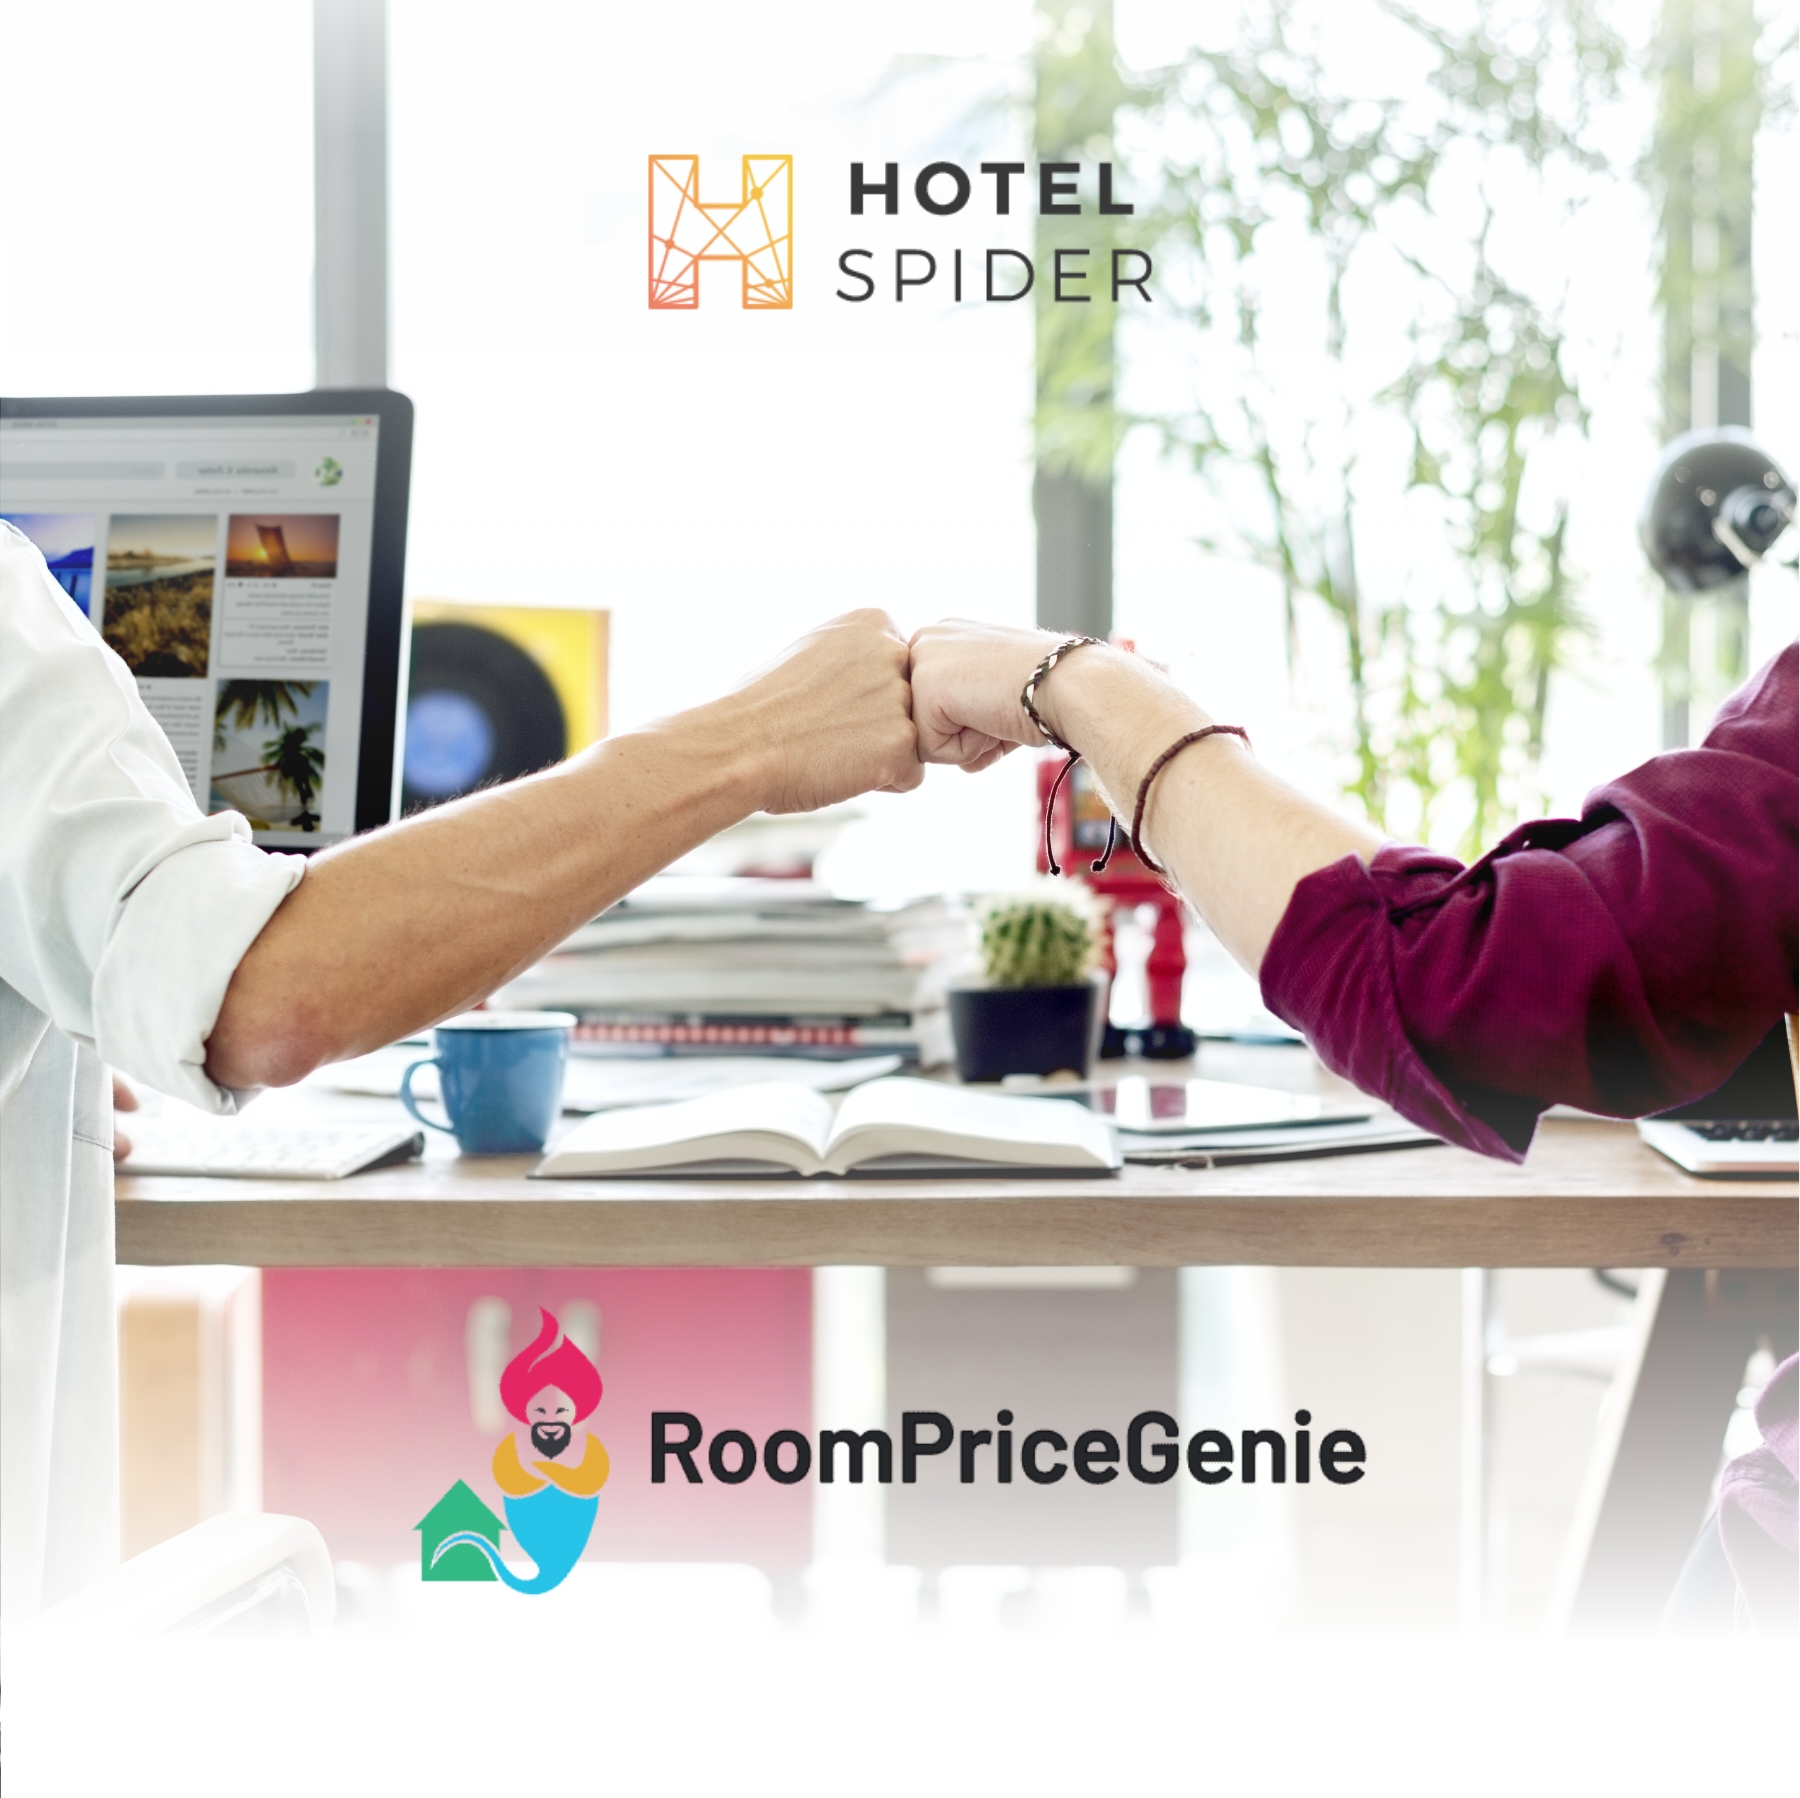 TN-Hotel-Spider-Room-Price-Genie.jpg